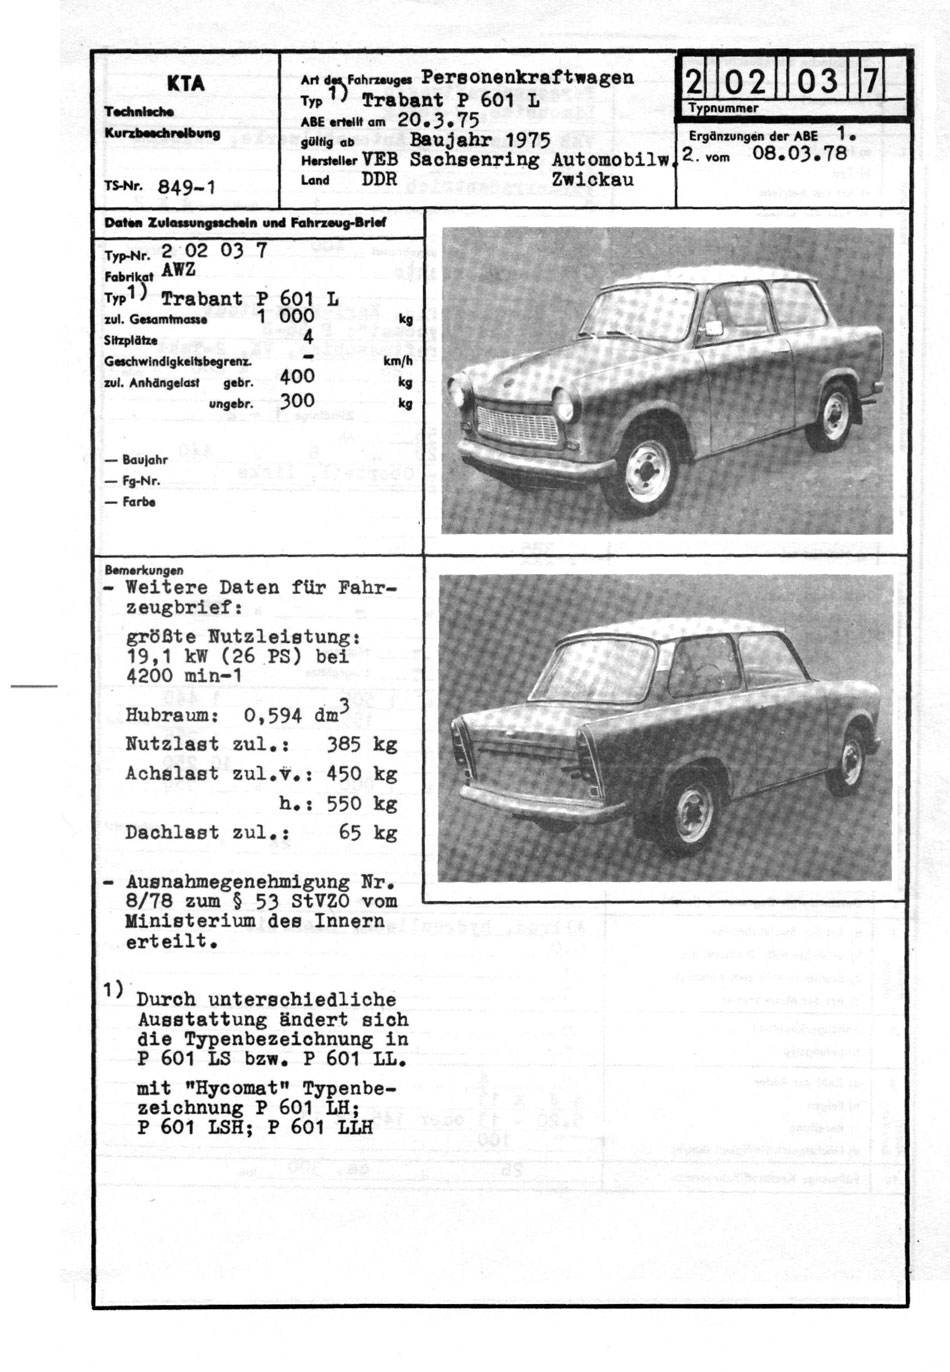 KTA-Datenblatt - P 601 L Seite 1